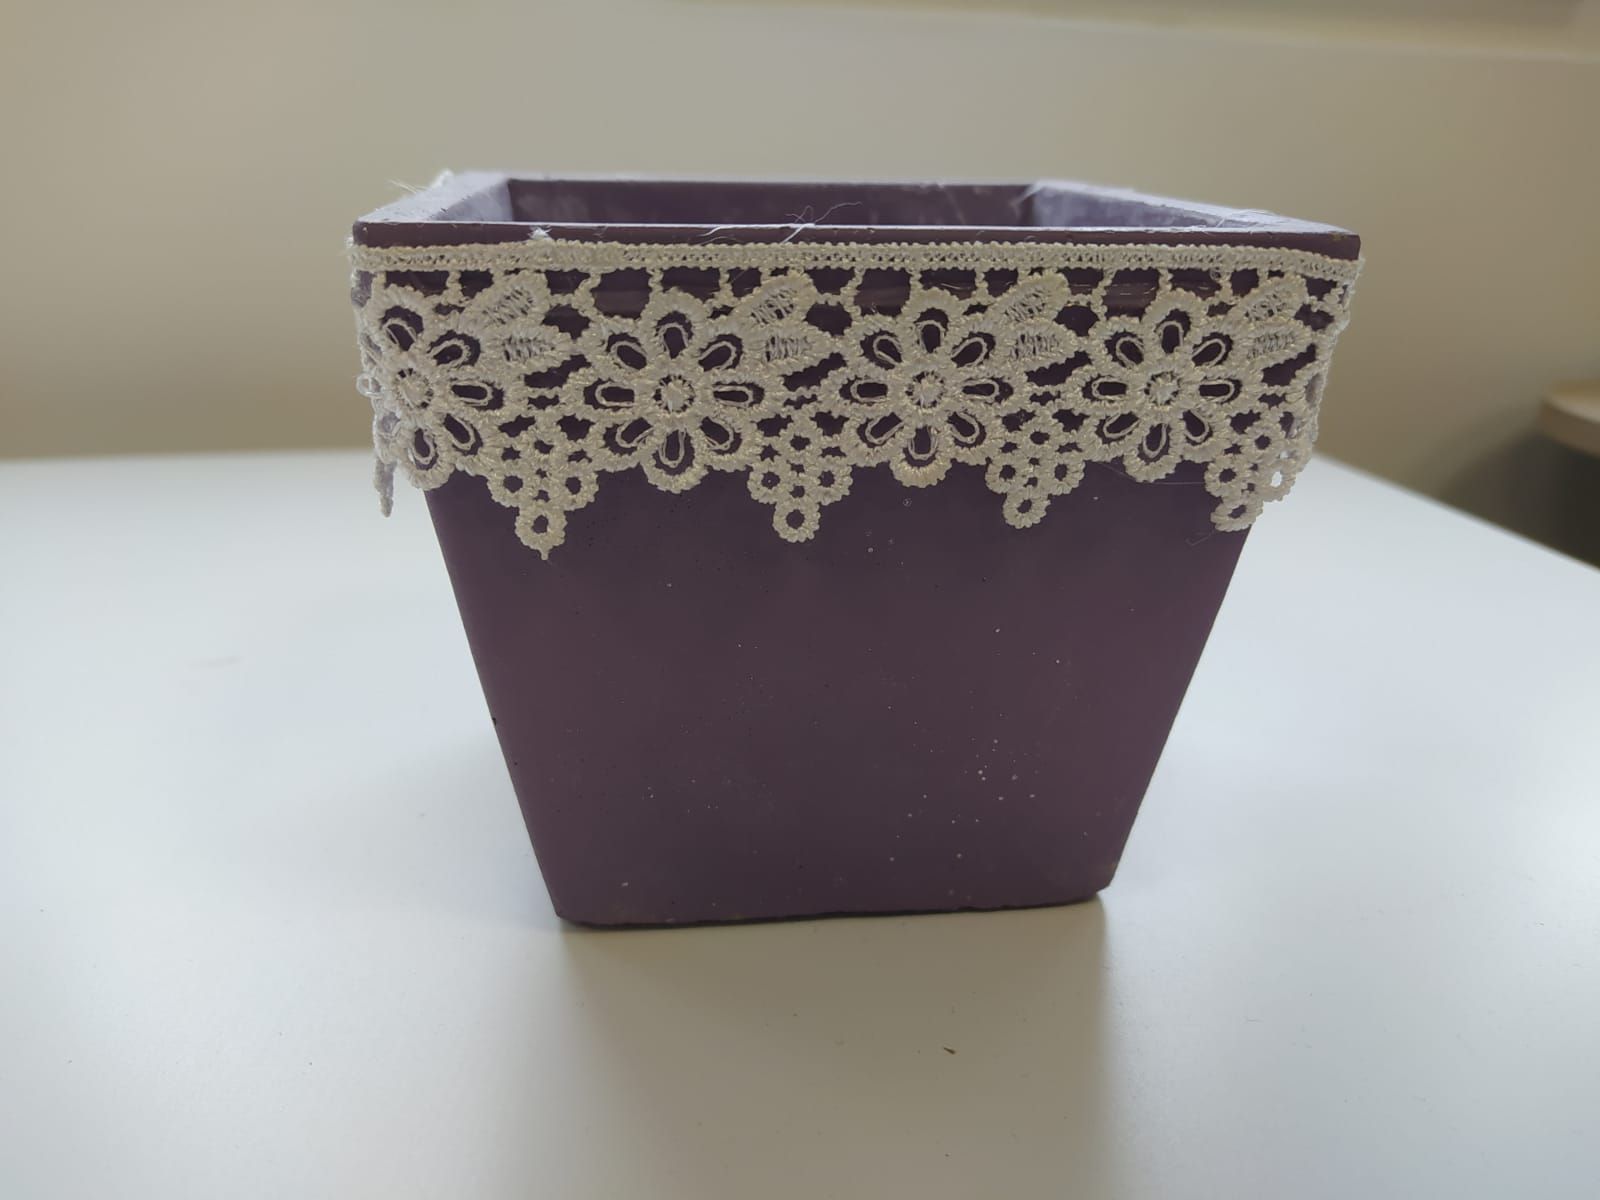 Čtvercový květináč z glazované keramiky, fialová, - 12 cm - RUSTIC kolekce od ninex.cz 